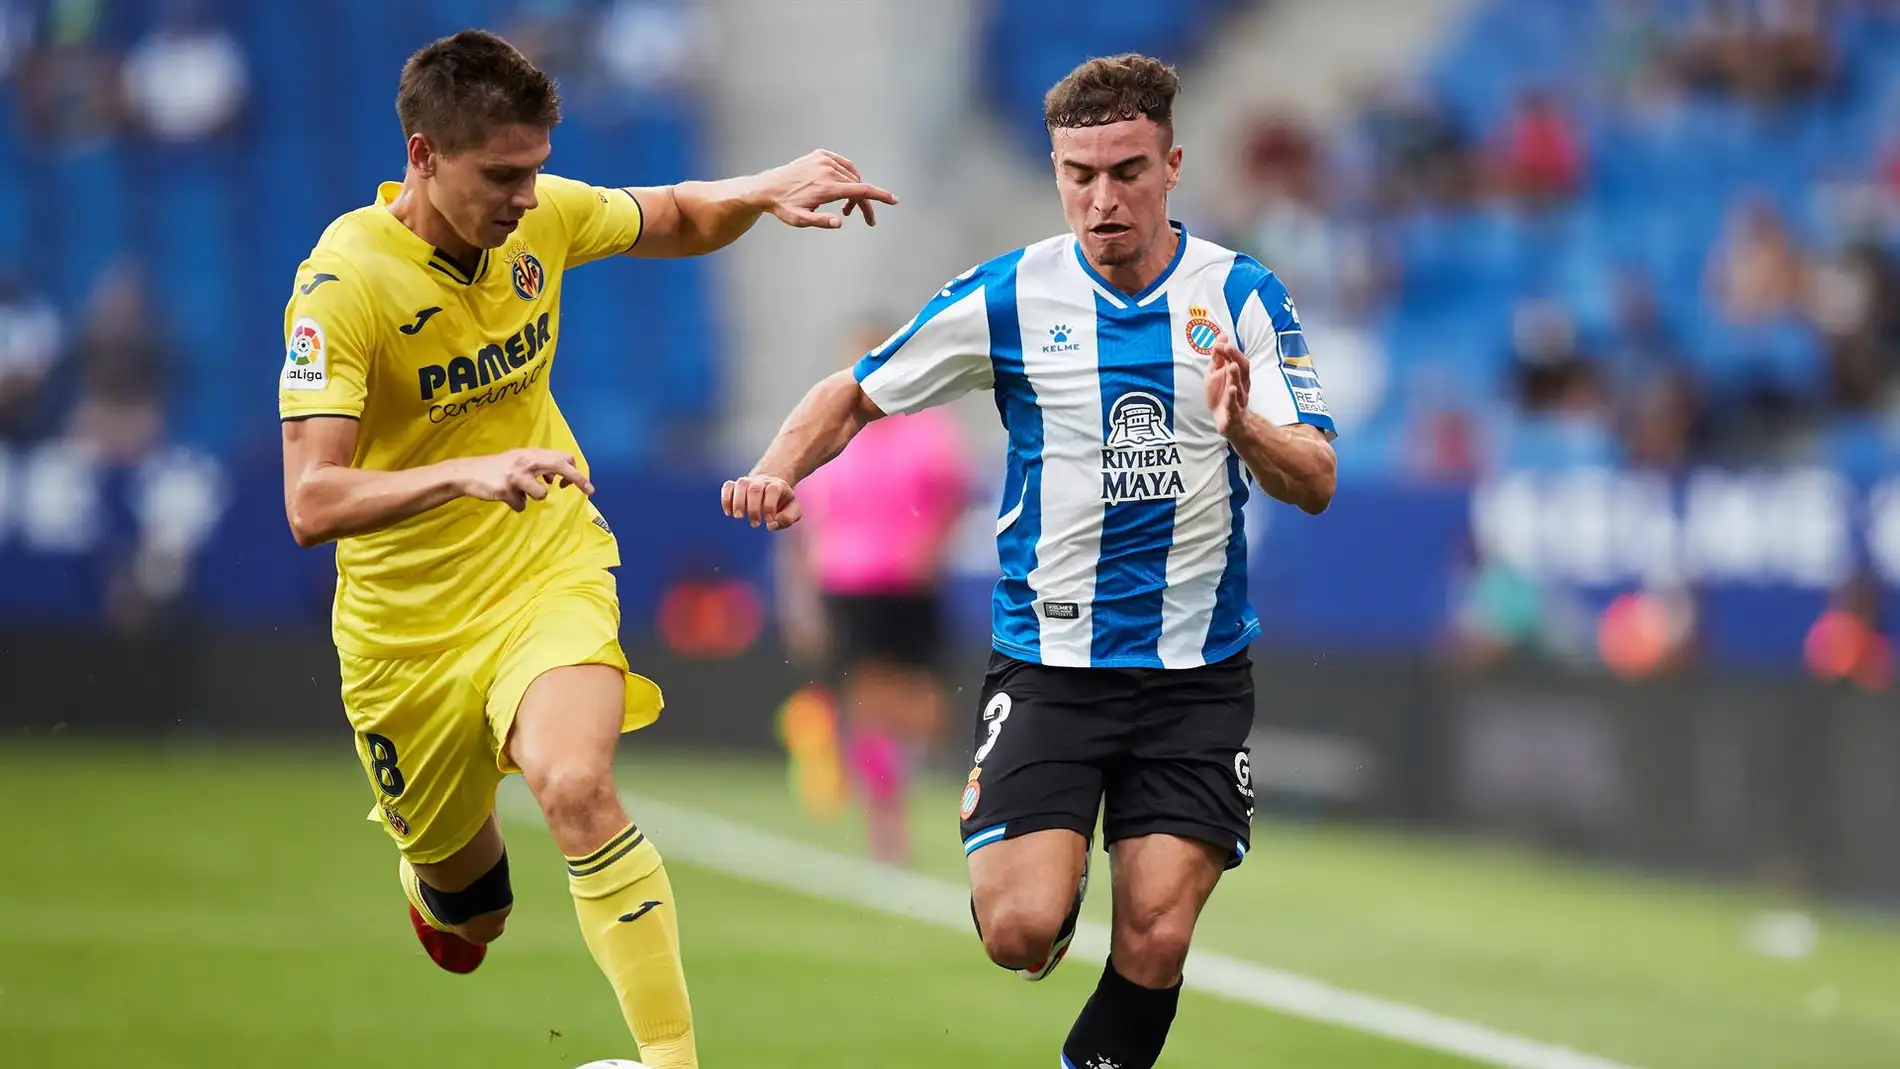 El Espanyol firma un empate contra el Villarreal en su primer partido en casa tras el regreso a Primera División